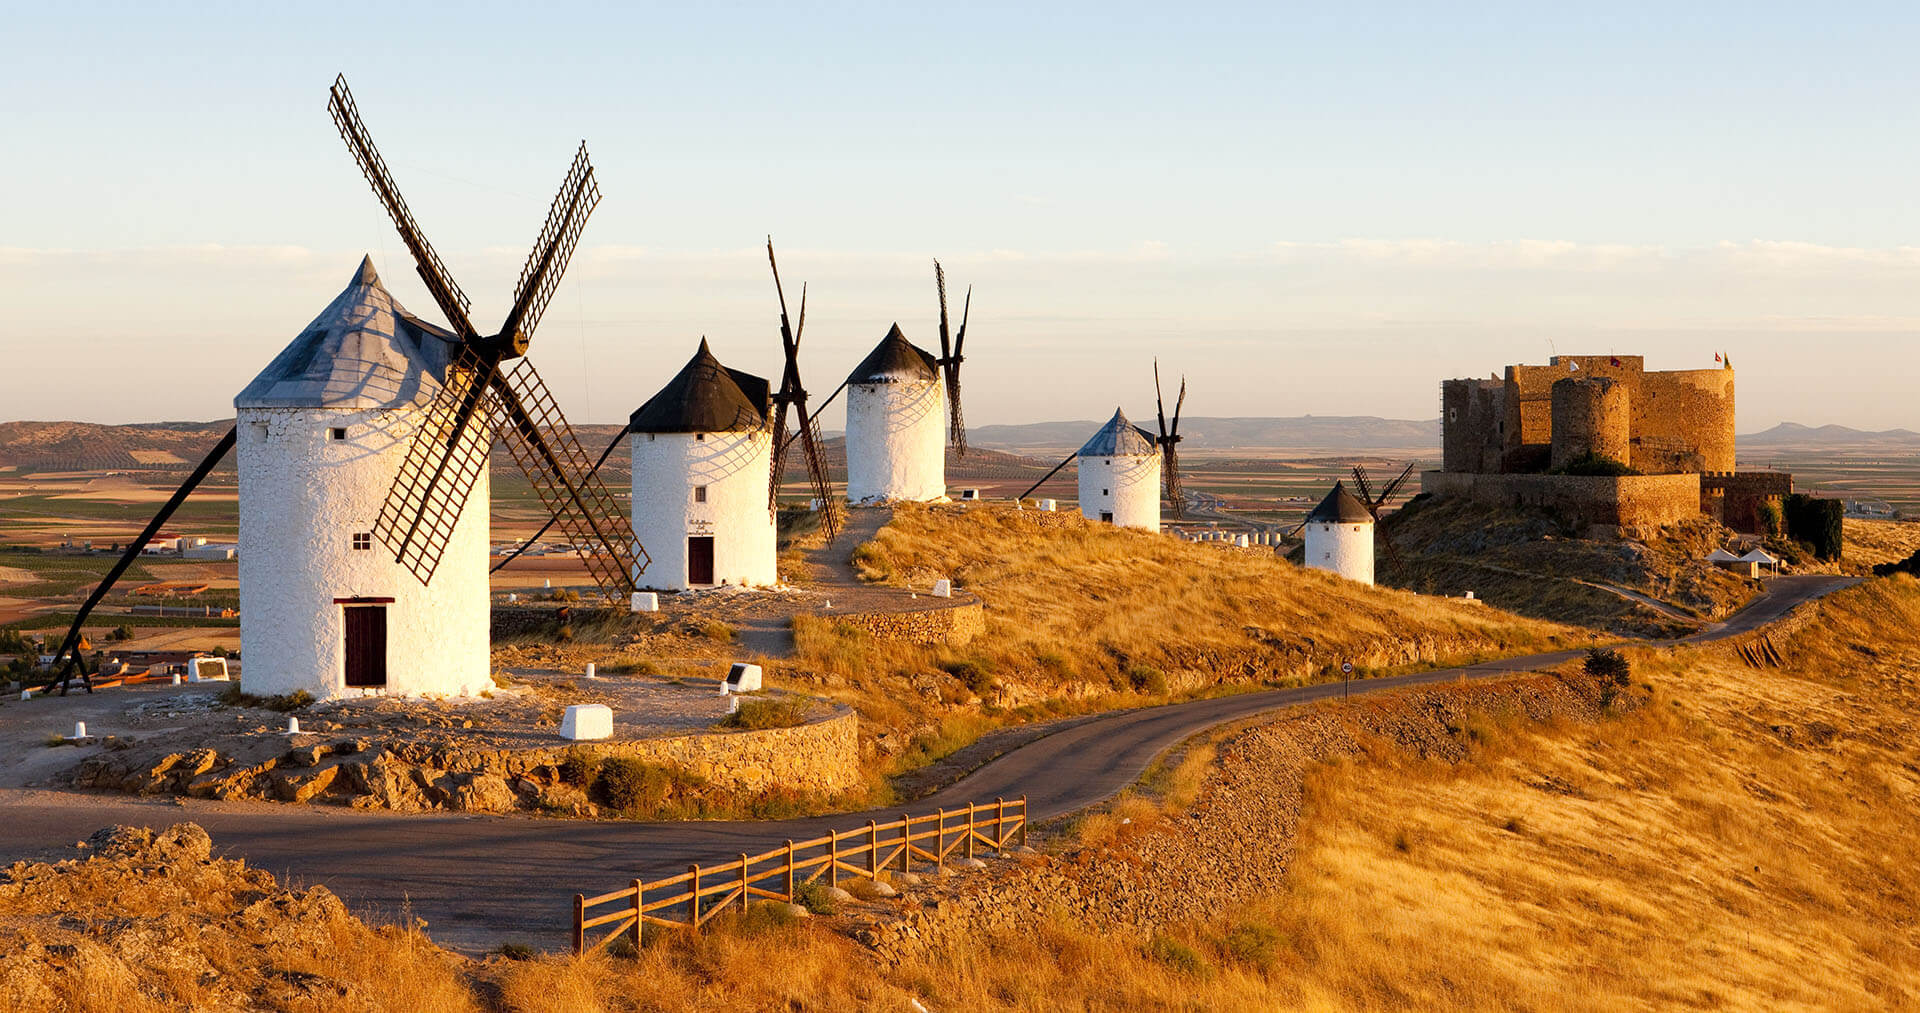 Windmills in Castilla la Mancha